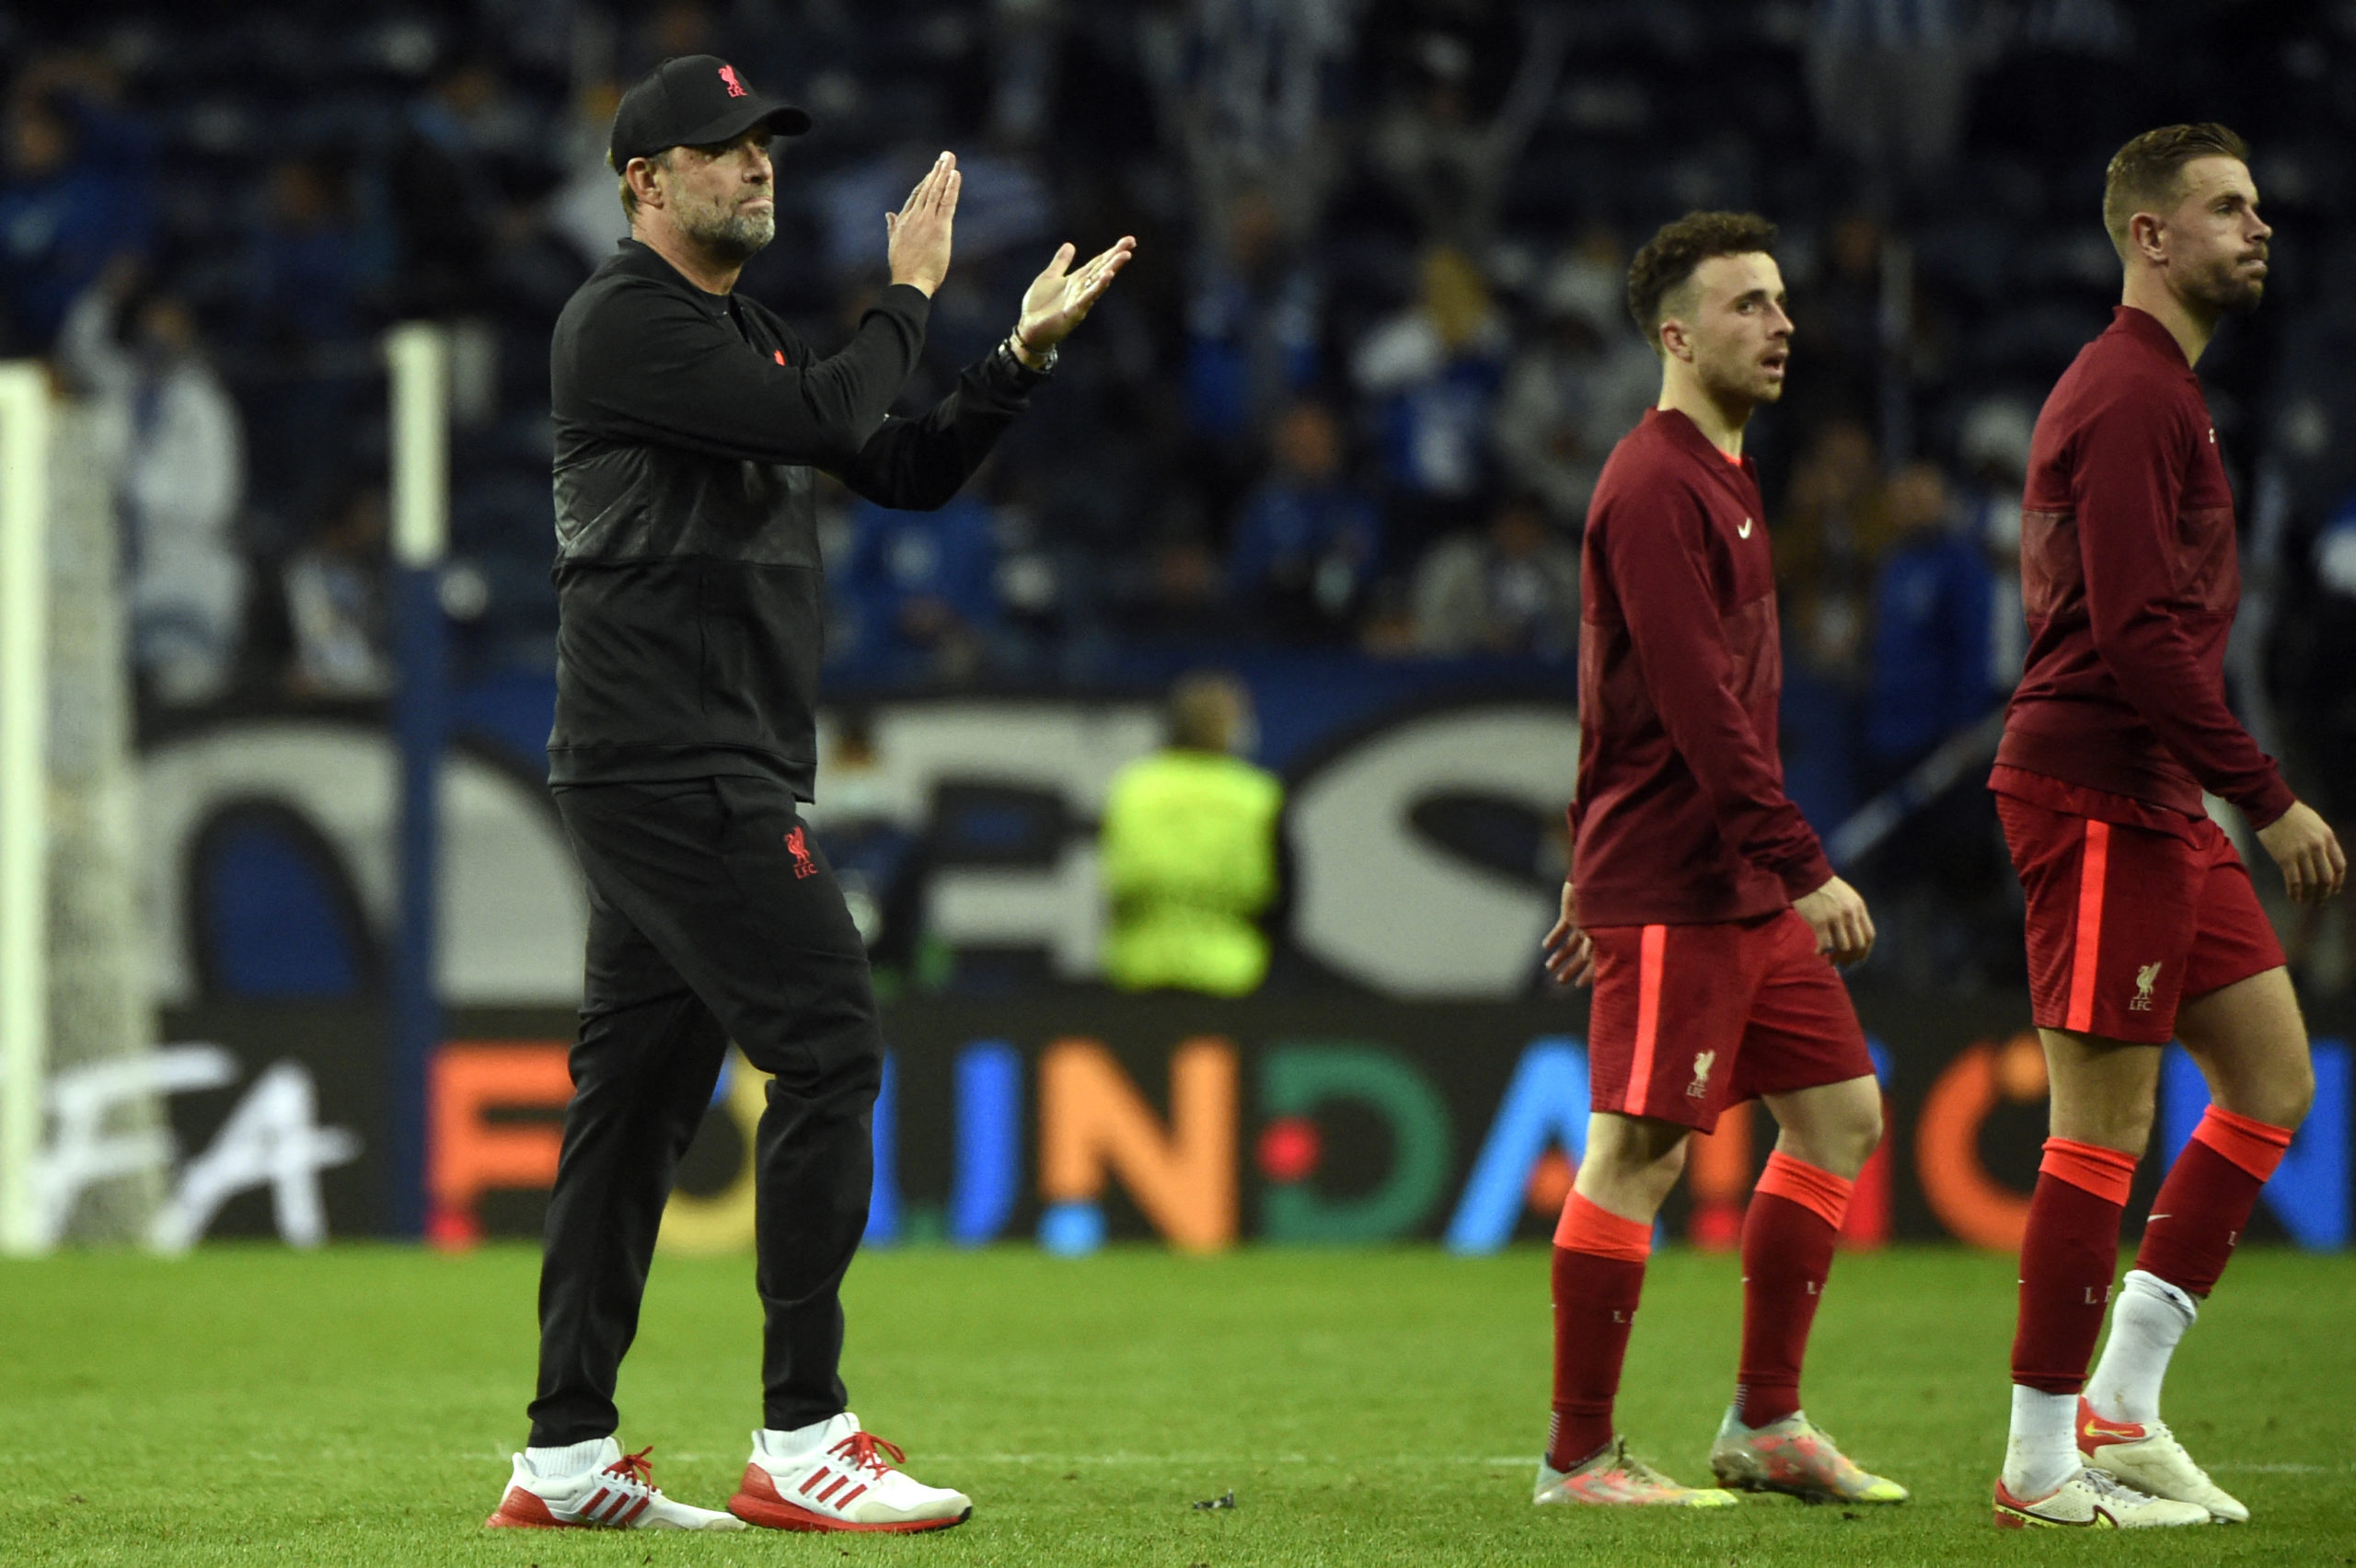 Lucas Leiva provides two-word reaction as Liverpool thrash Porto tonight